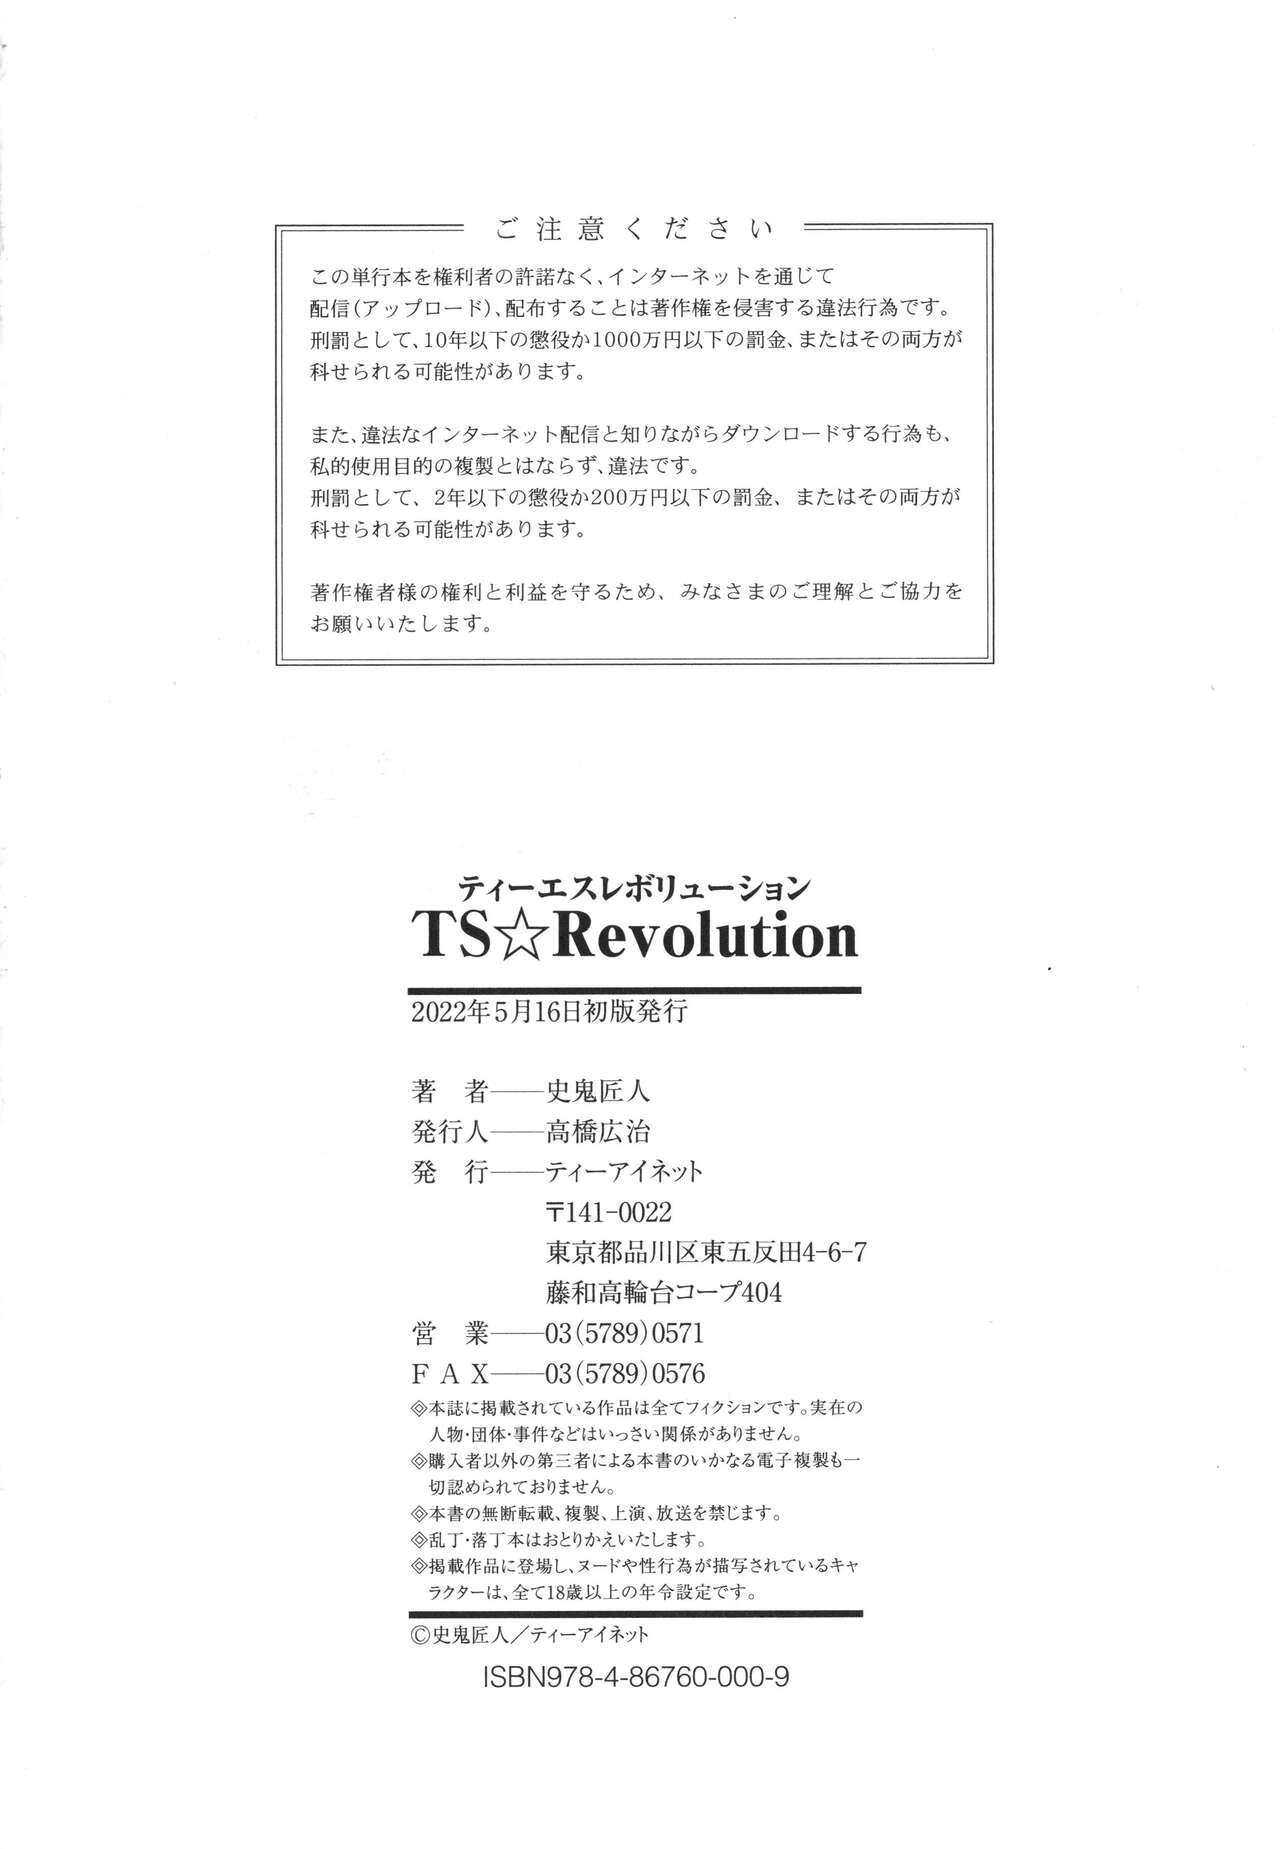 TS Revolution 226